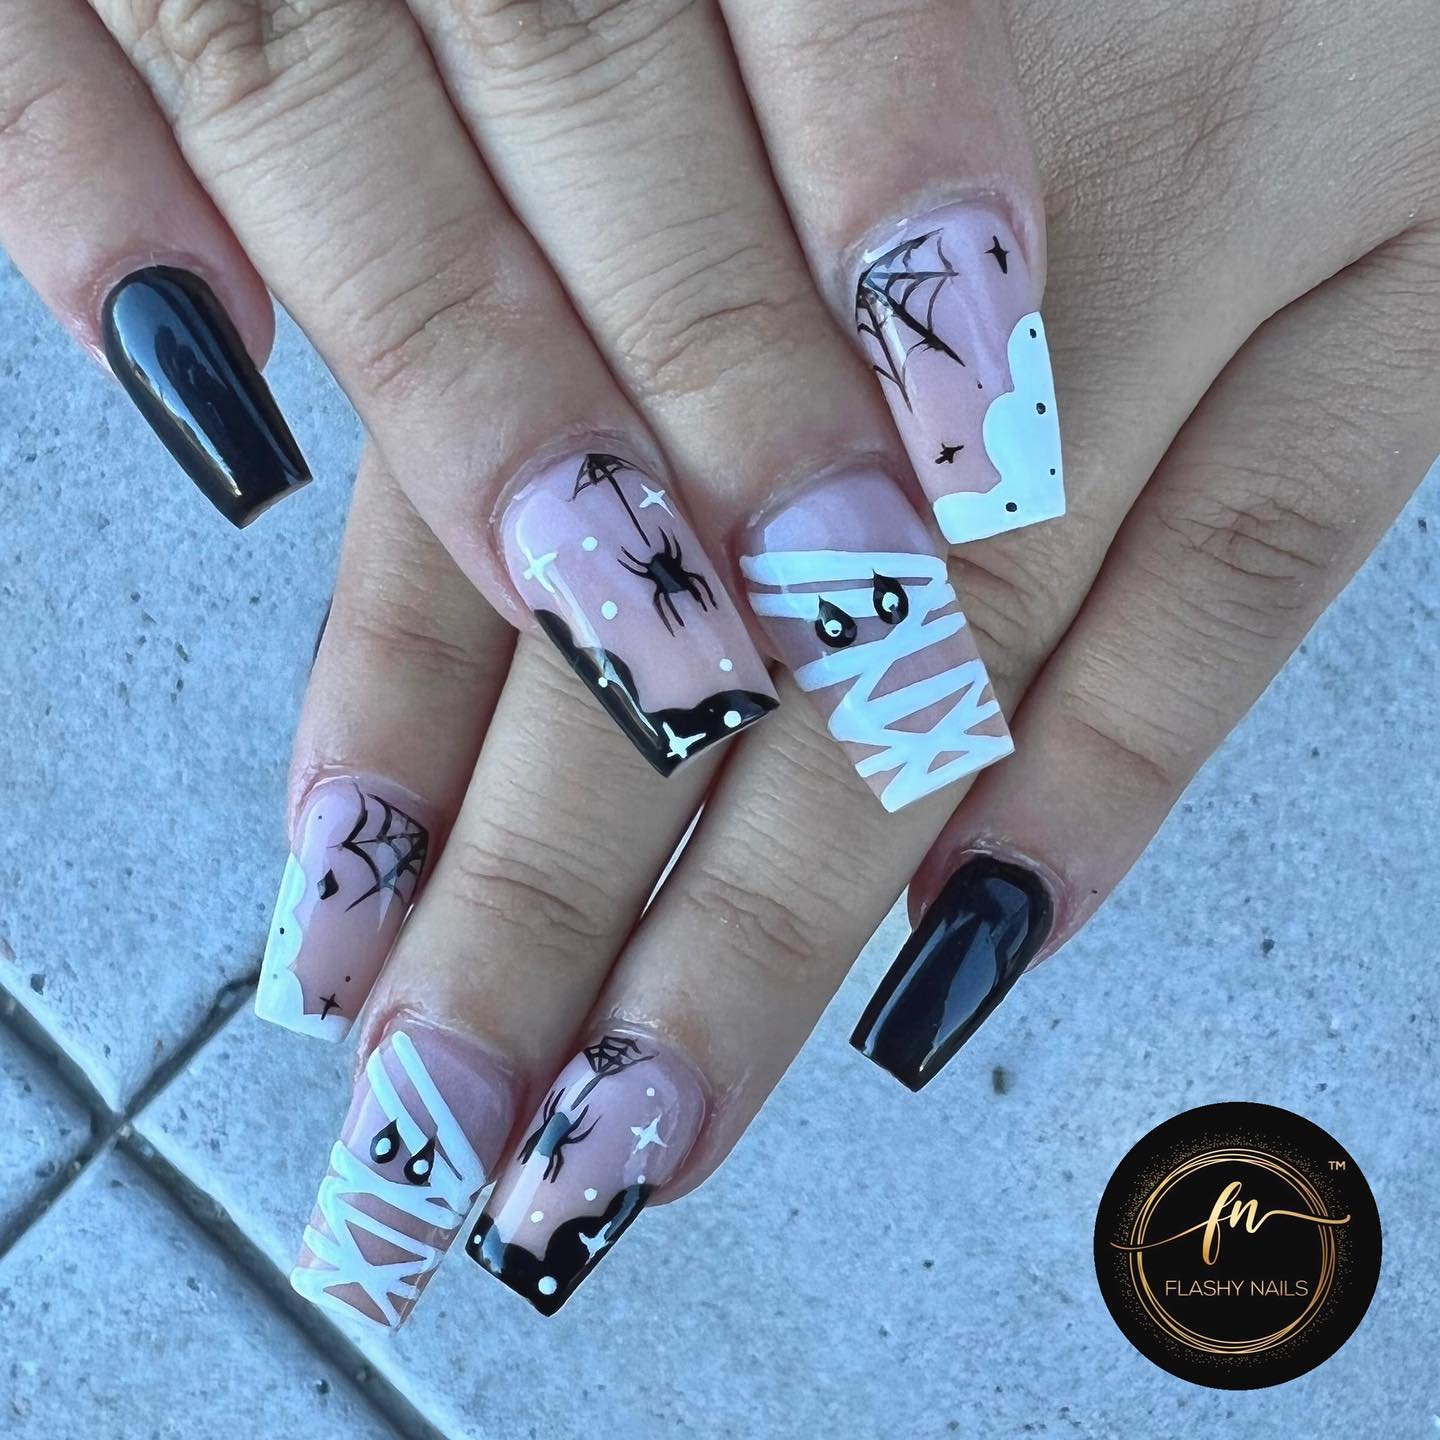 pink and black playboy bunny nails, cute fish nails, boat fingernails,  purple dandelion make a wish nail art......nail art tutorials up for  friday! - Nail Art by Robin Moses